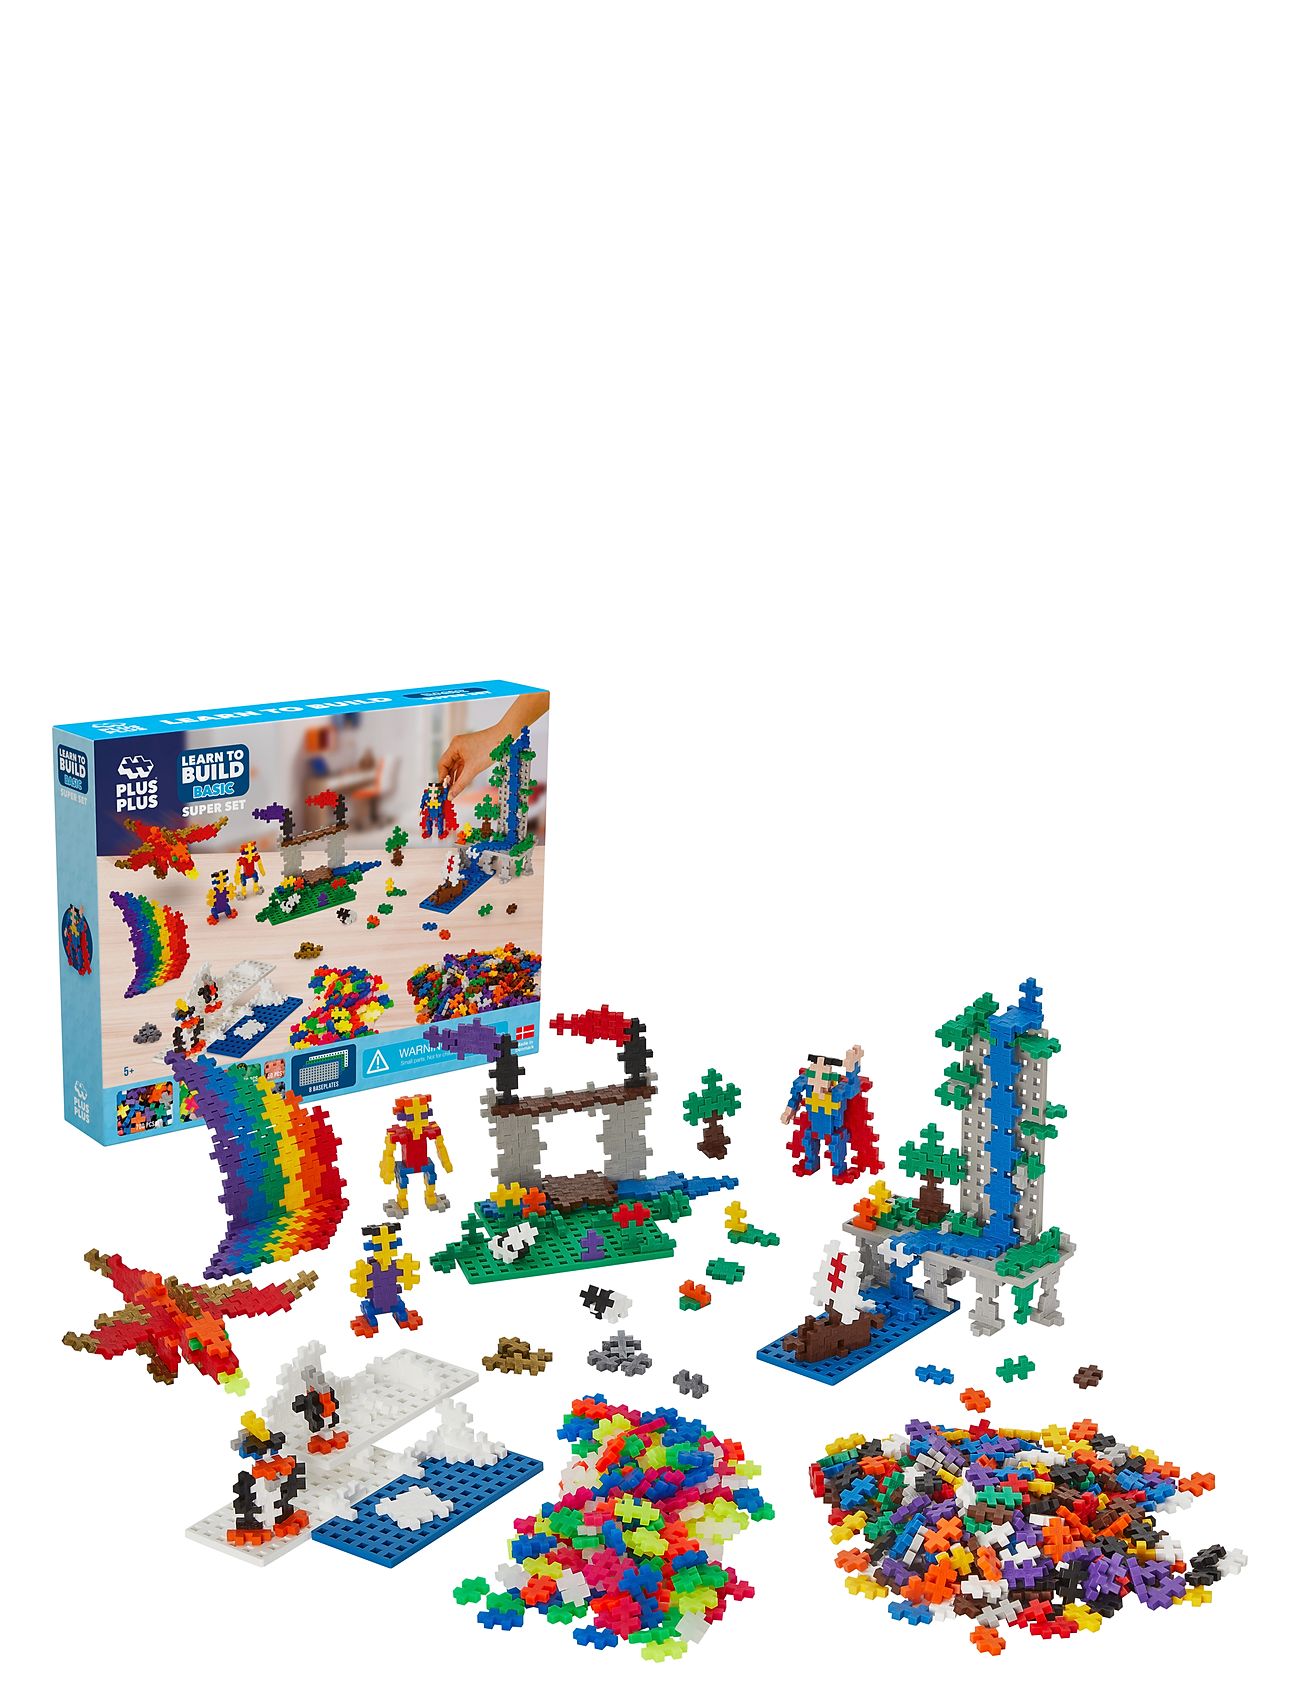 Plus-Plus Basic Learn To Build Super Set Toys Building Sets & Blocks Building Sets Multi/patterned Plus-Plus